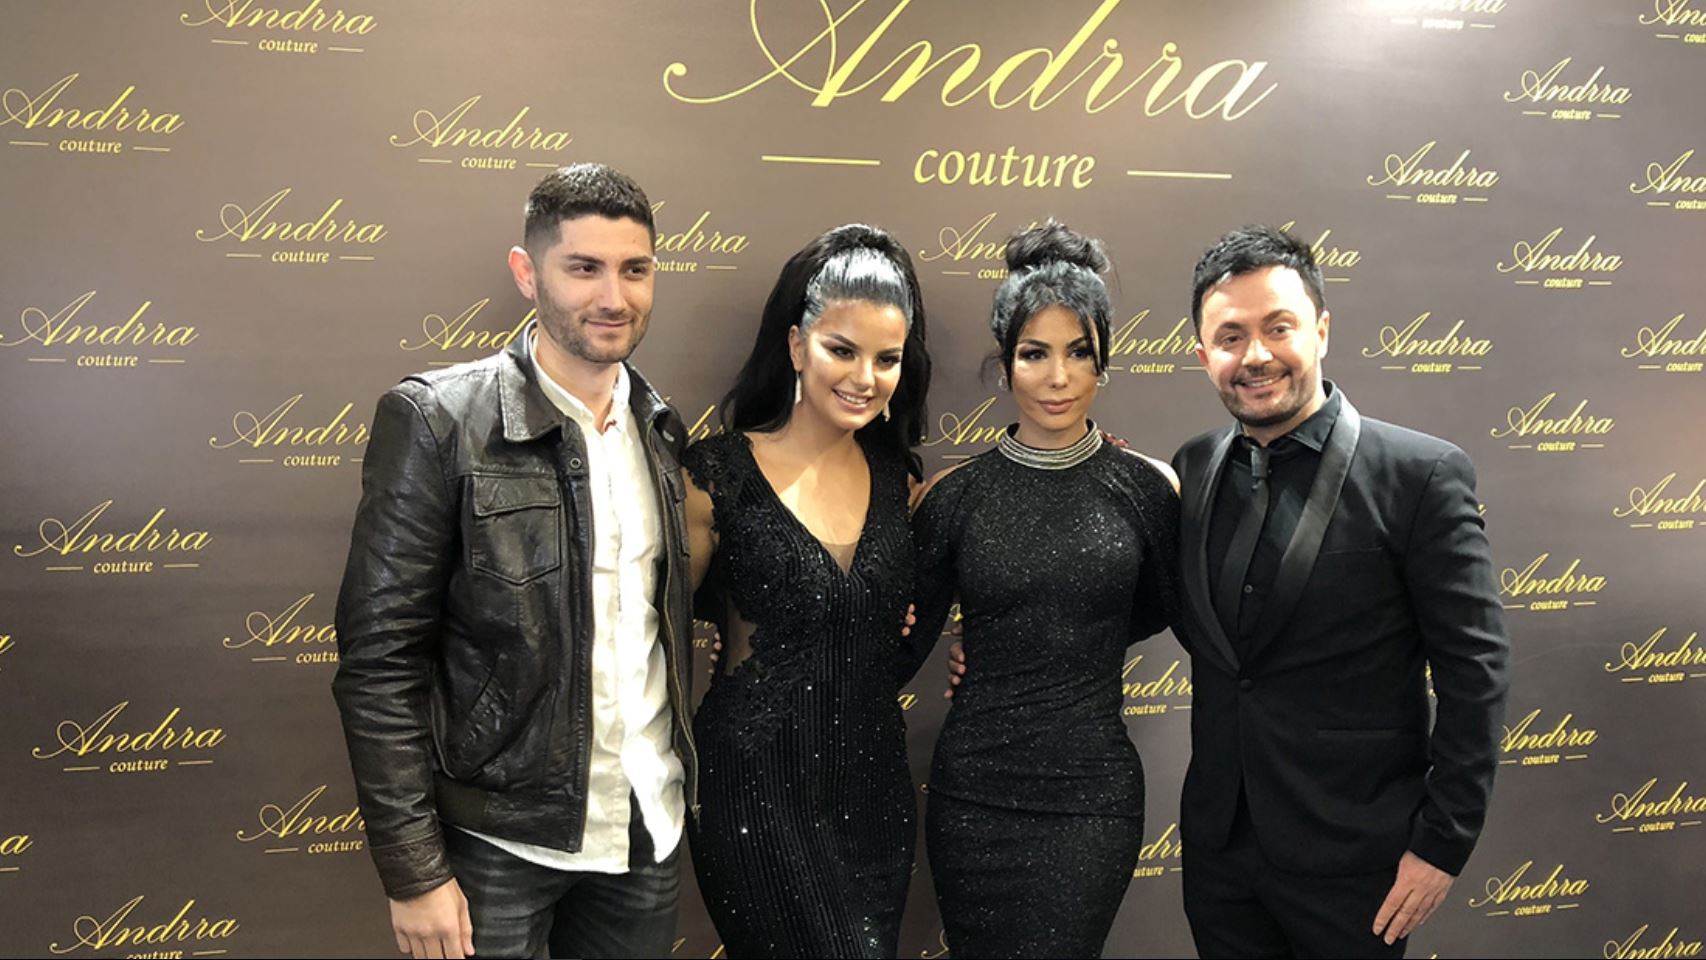 Sinani dhe Andrra, mbledhin VIP-at në “Andrra Couture”